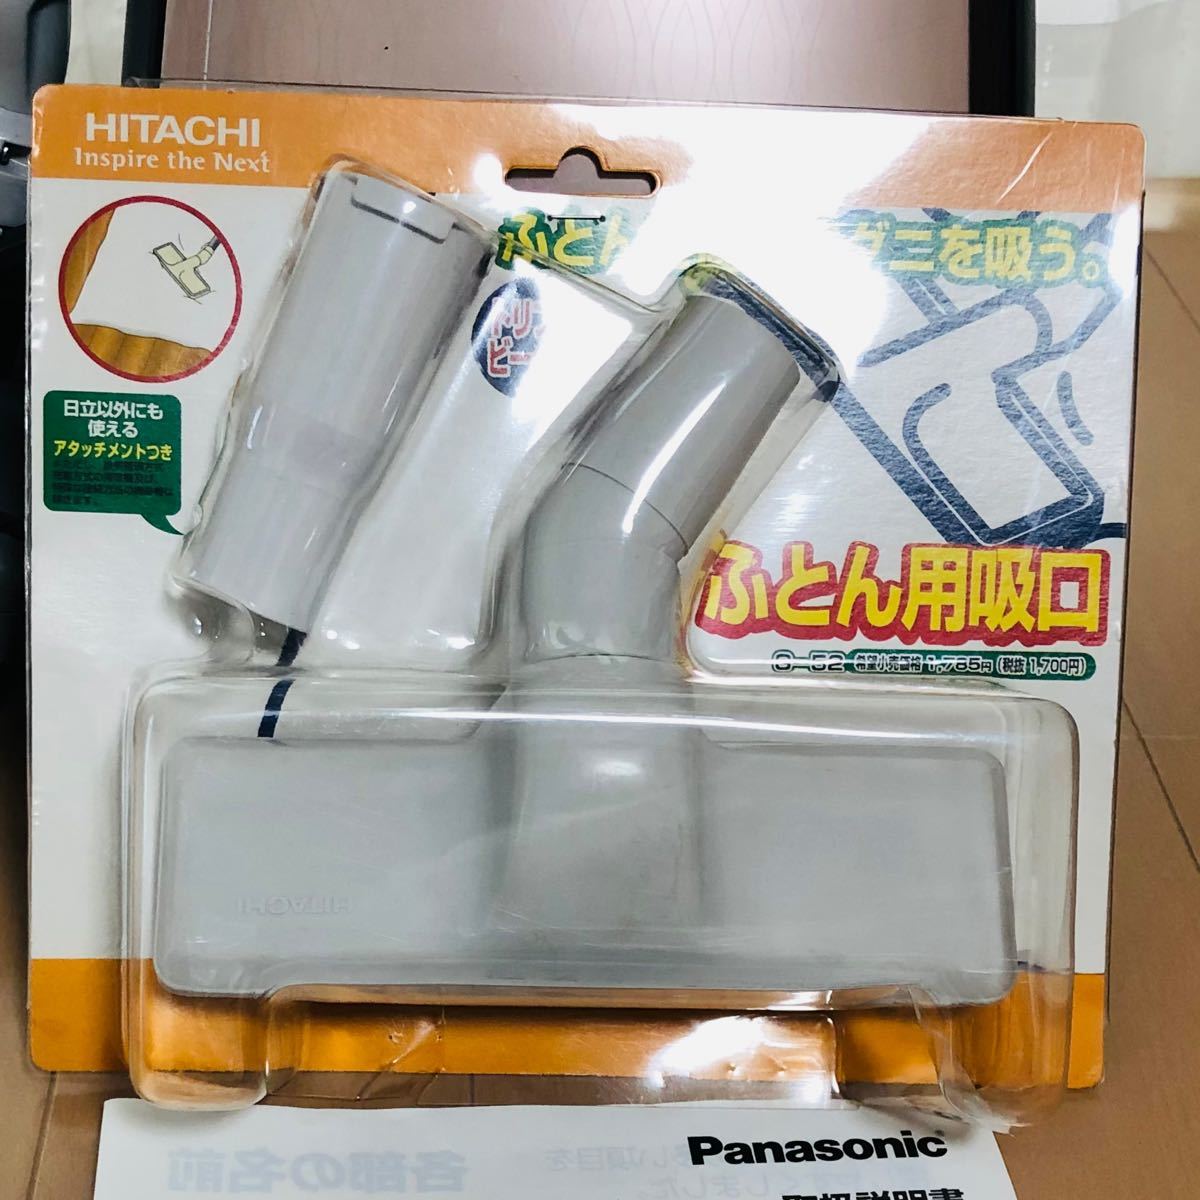 パナソニック 紙パック式掃除機 Panasonic MC-PC34AG-P 布団用ノズル